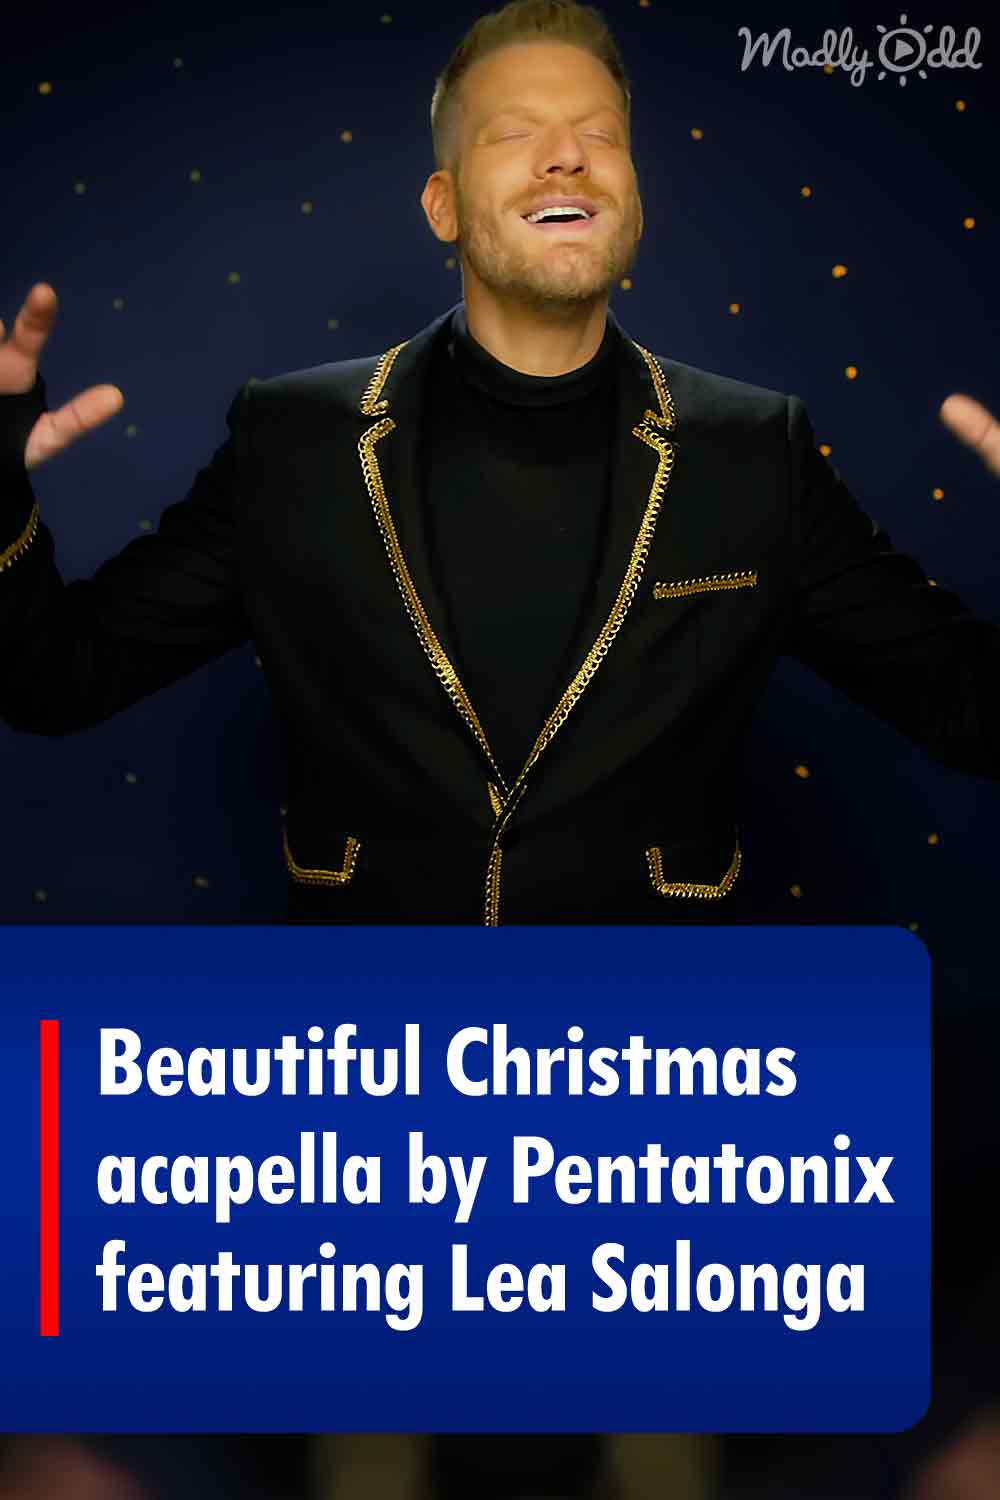 Beautiful Christmas acapella by Pentatonix featuring Lea Salonga